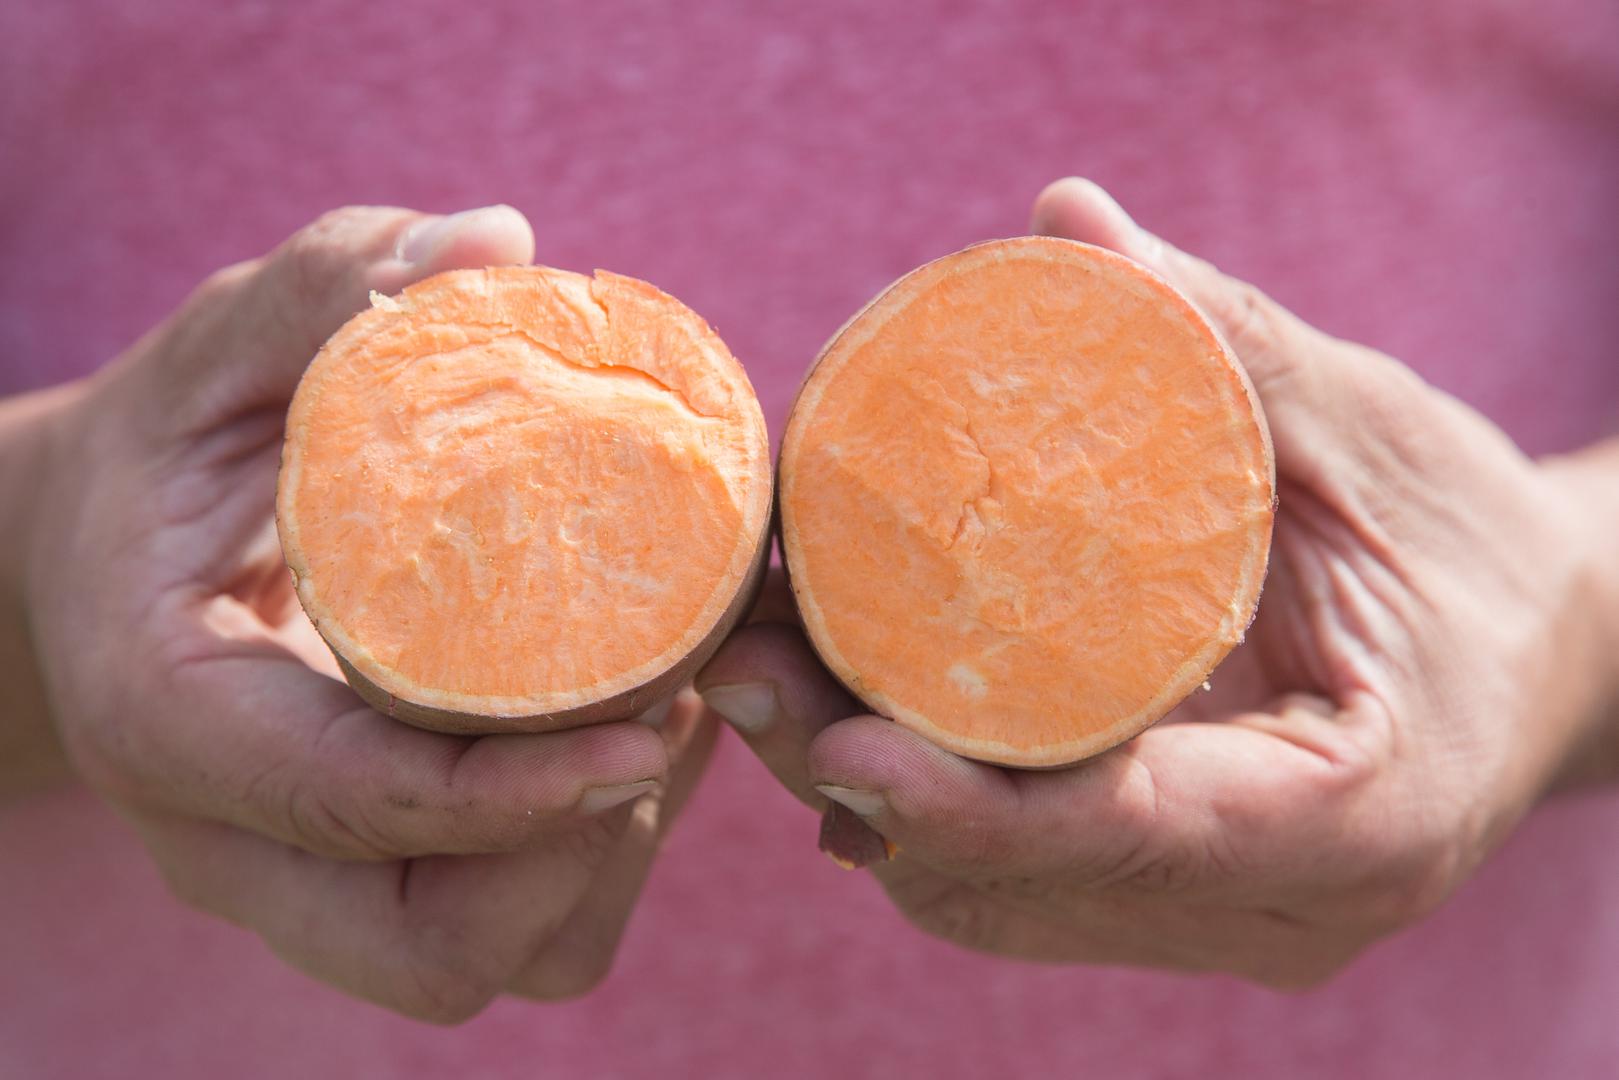 6. BATAT - Kao i naranče, slatki krumpir je također pun vitamina C koji izglađuje bore. Studija je otkrila da su volonteri koji su konzumirali oko četiri miligrama C vitamina dnevno u tri godine smanjili pojavu bora za 11 posto. Visok sadržaj beta karotena ključan je za taj mladenački sjaj.